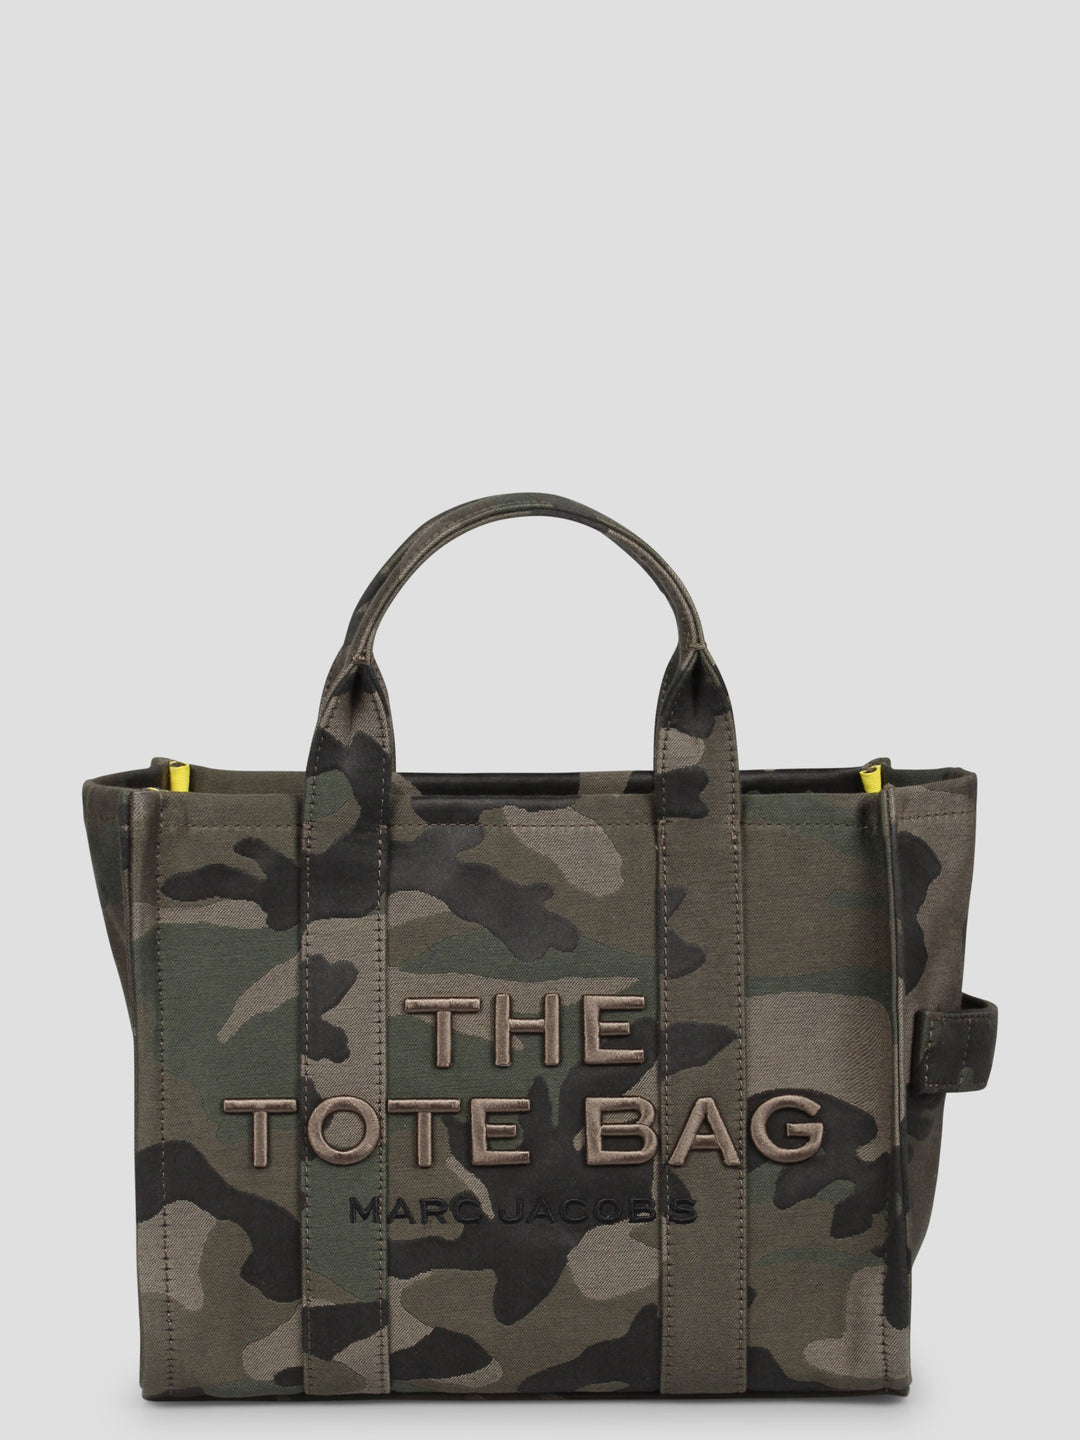 The camo jacquard medium tote bag